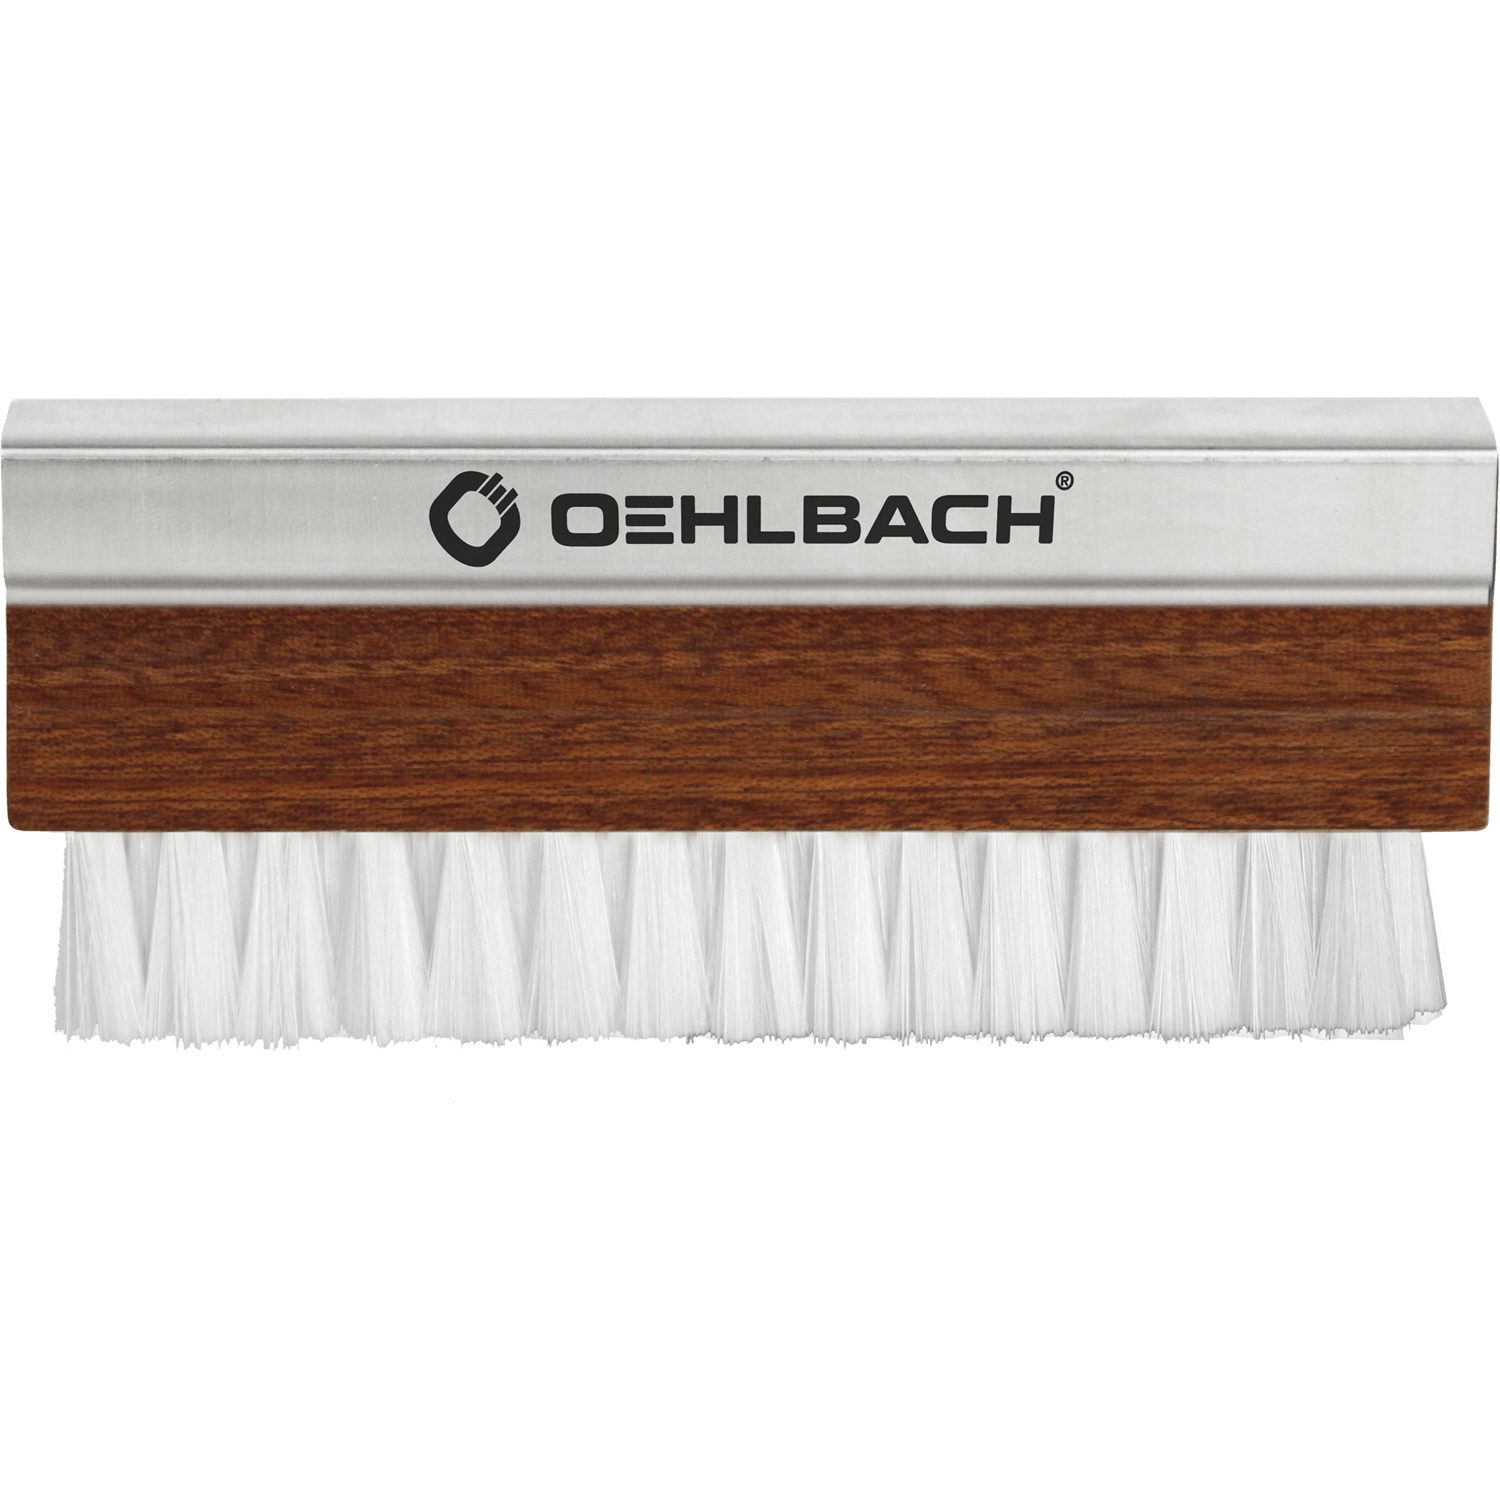 Phono Schallplattenbürste Oehlbach Plattenspieler Pro 2614 Brush